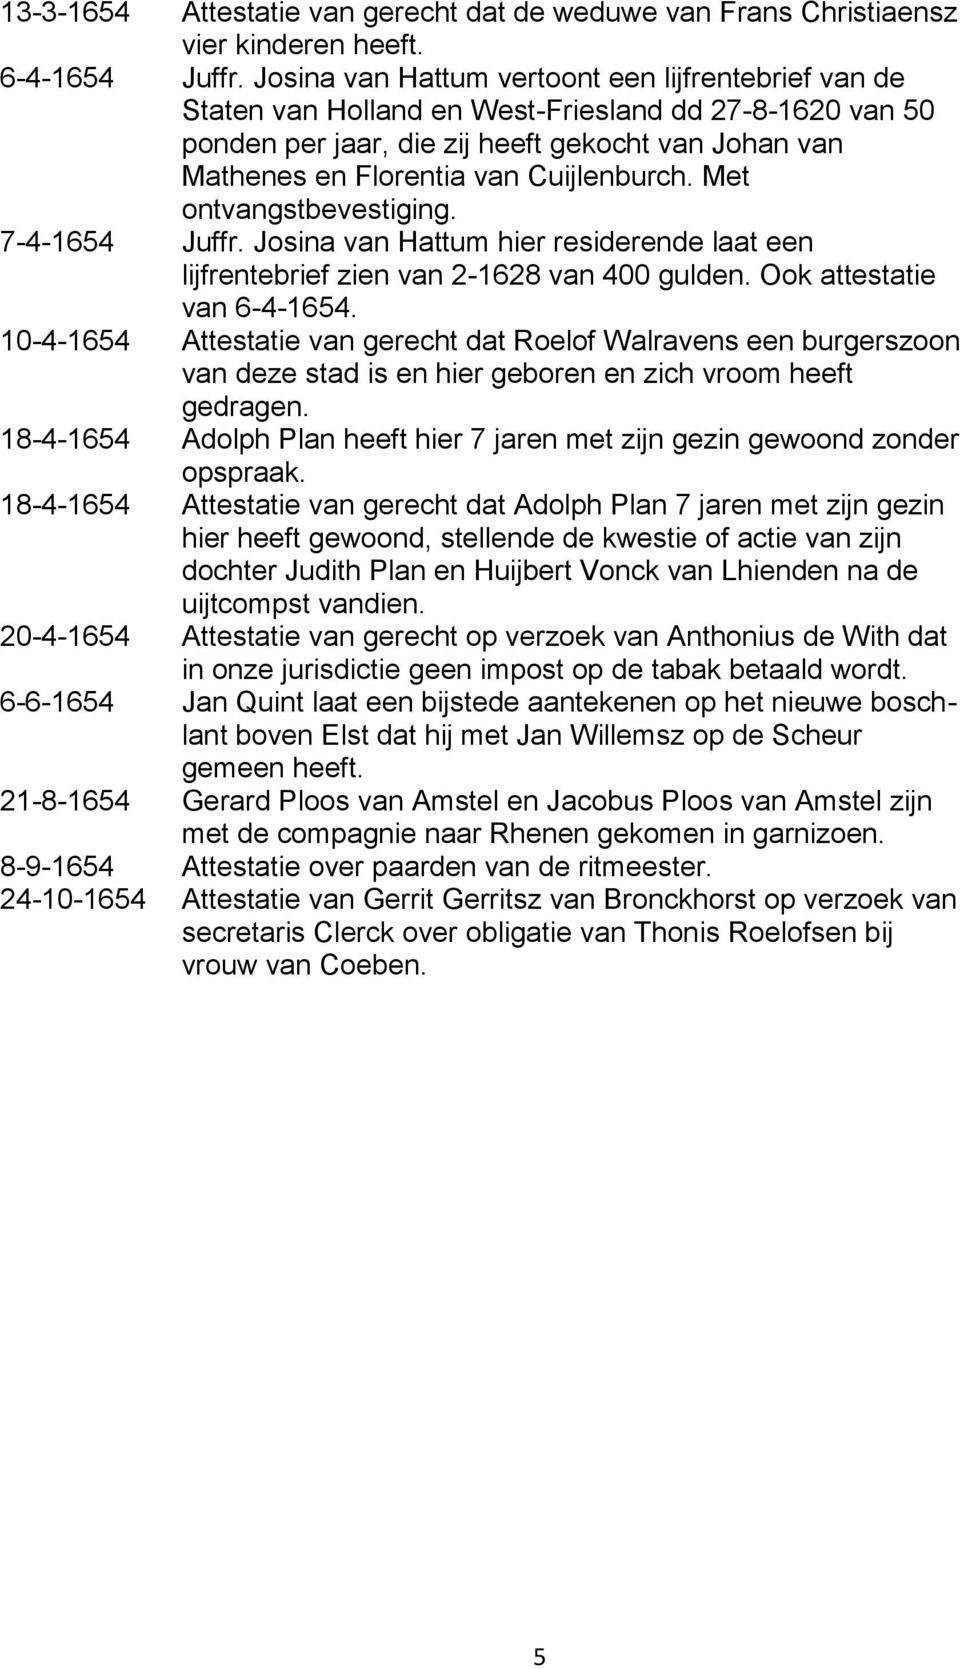 Cuijlenburch. Met ontvangstbevestiging. 7-4-1654 Juffr. Josina van Hattum hier residerende laat een lijfrentebrief zien van 2-1628 van 400 gulden. Ook attestatie van 6-4-1654.